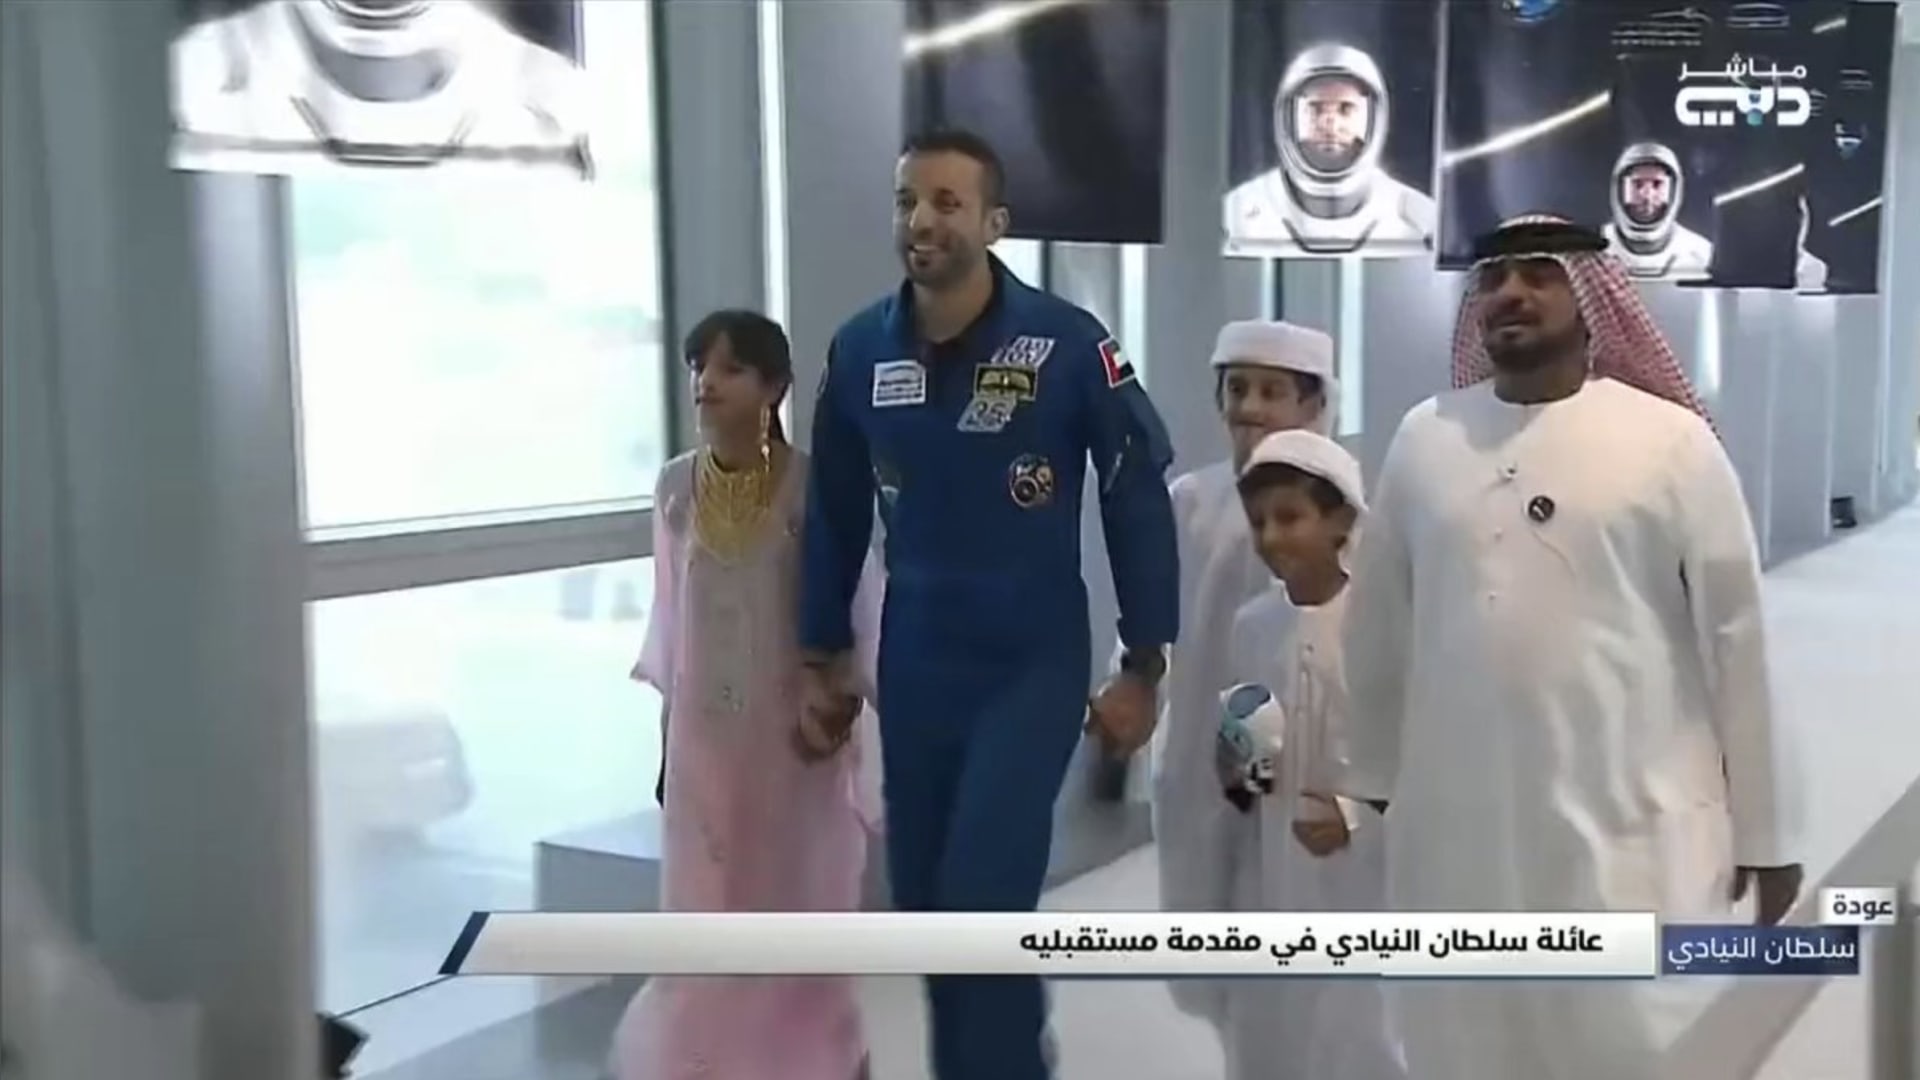 شاهد اللحظات الأولى لخروج سلطان النيادي من المحطة الدولية والسير في الفضاء